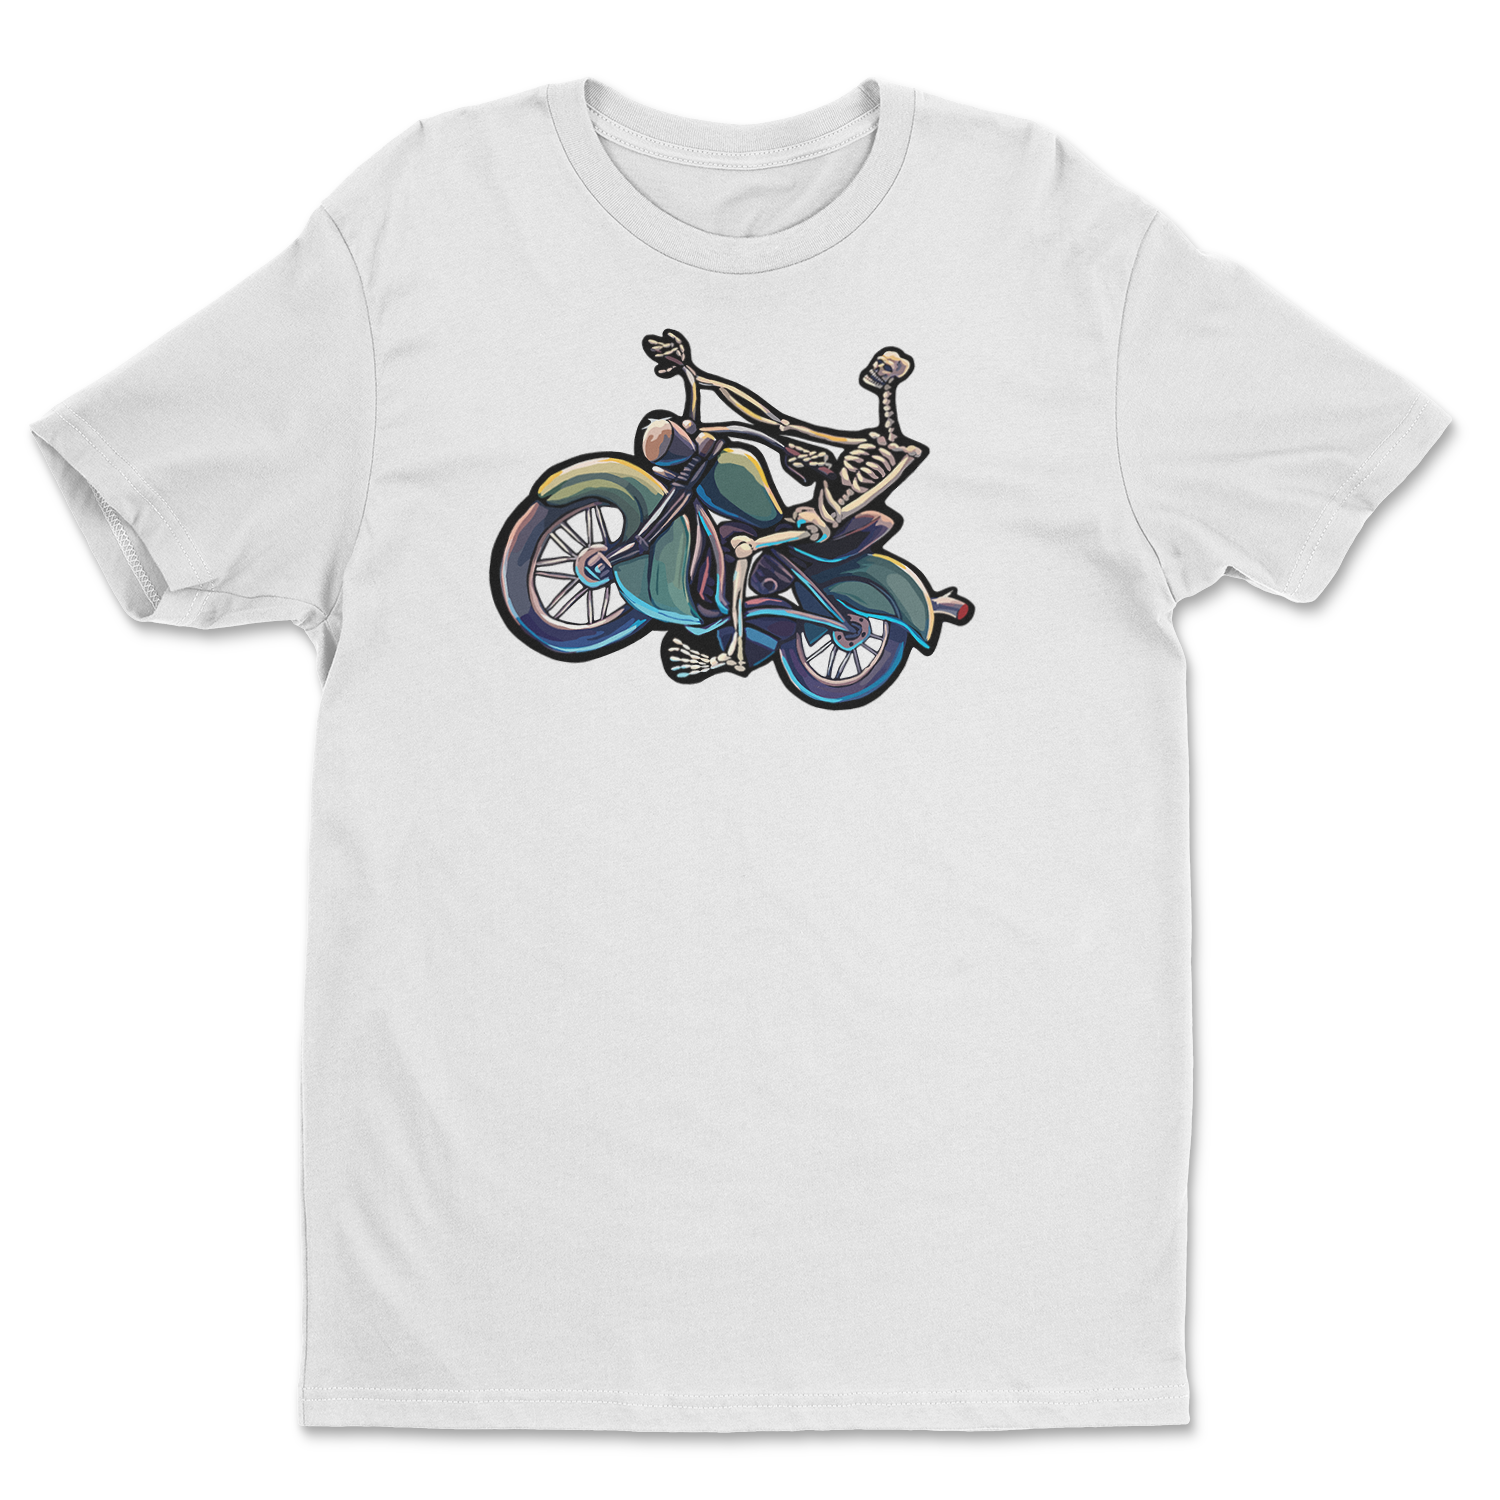 "Skeleton Rider - Twisted Spoke" Unisex T-Shirt